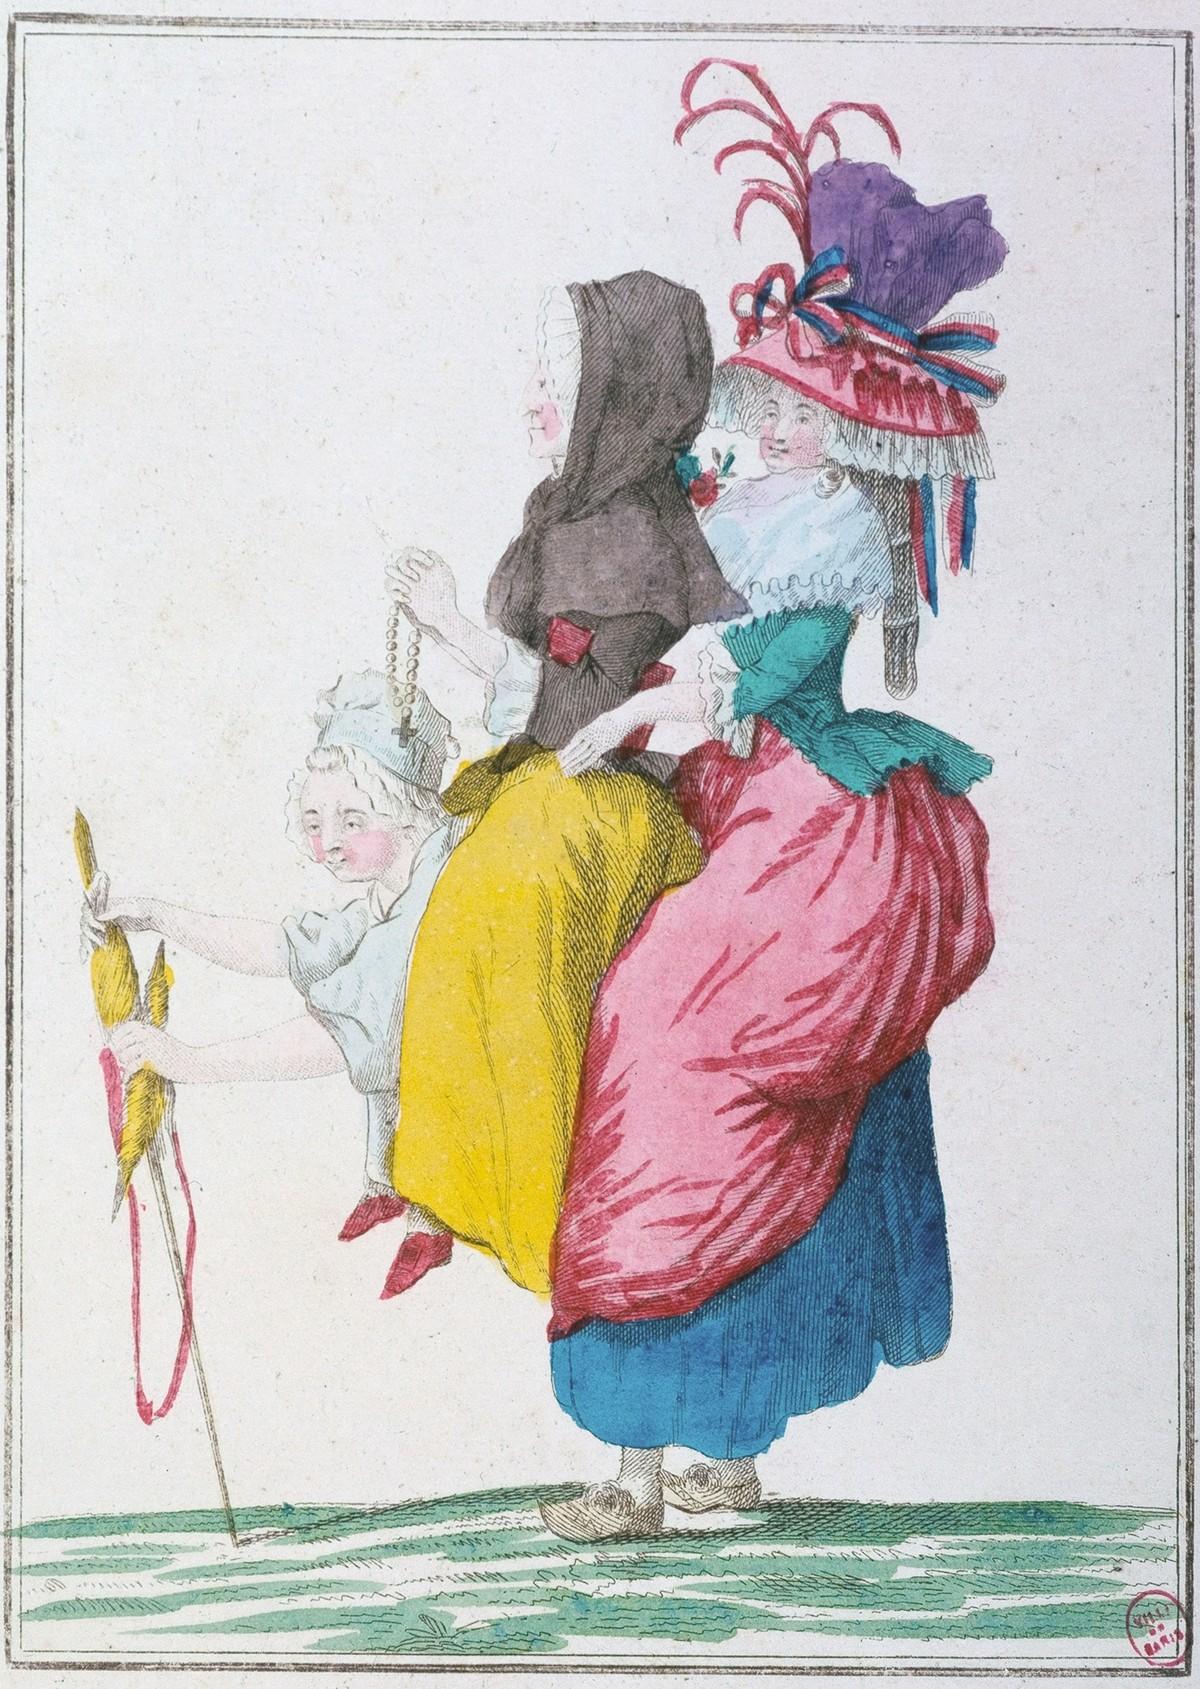 Anonyme, Caricature sur les trois
ordres en femmes : le tiers état portant sur son dos le Clergé et la Noblesse, 1789,
estampe coloriée, musée Carnavalet, Paris.